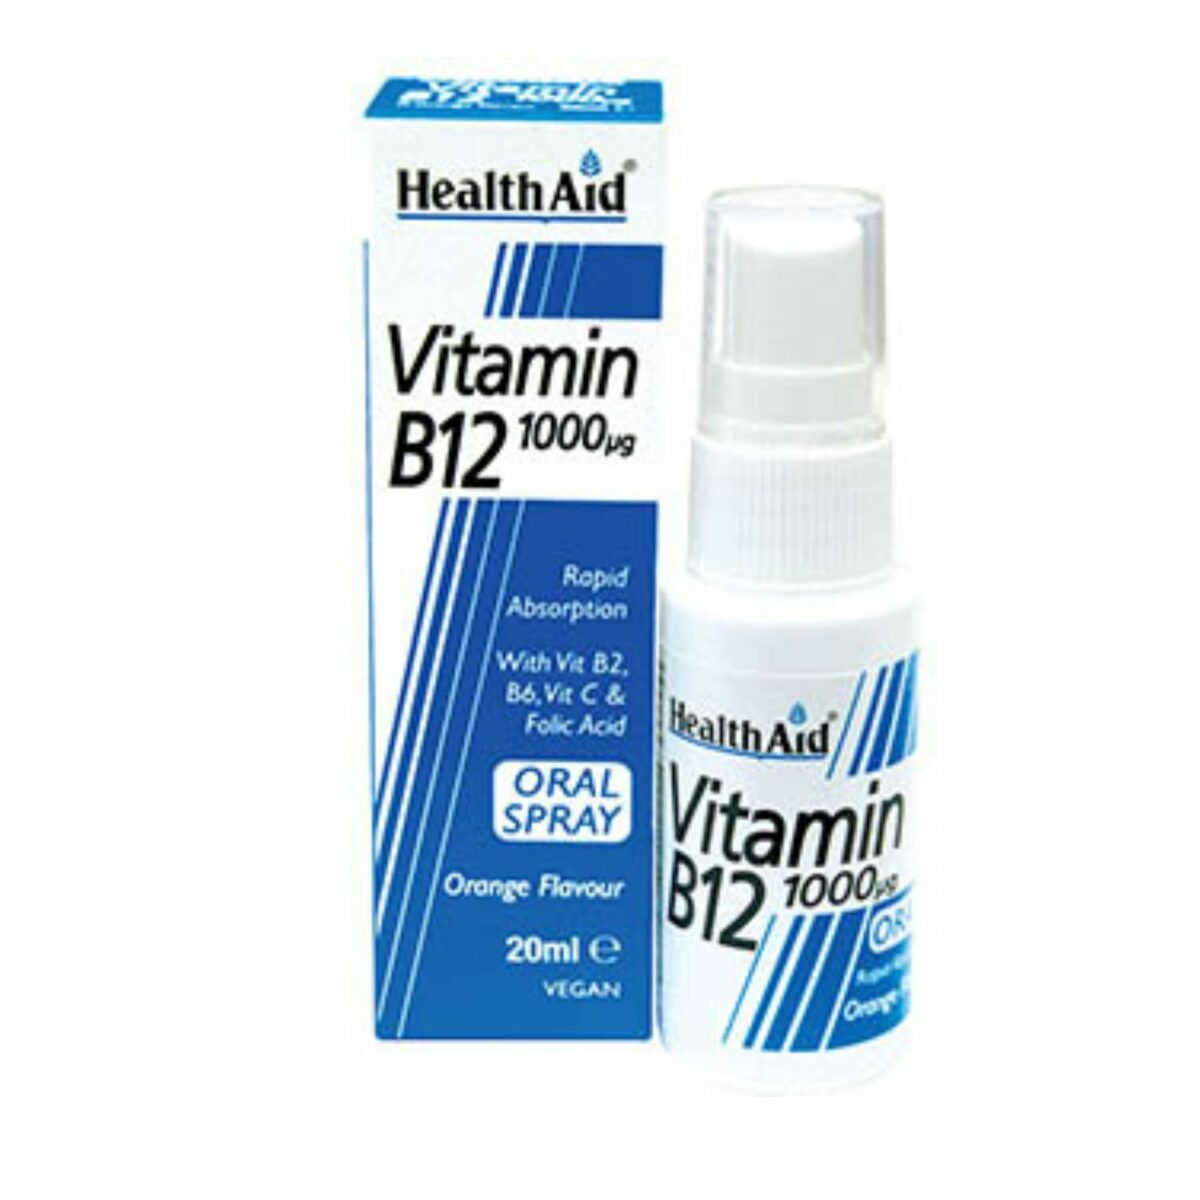 Healthaid Vitamin B12 sprej za usta 20ml